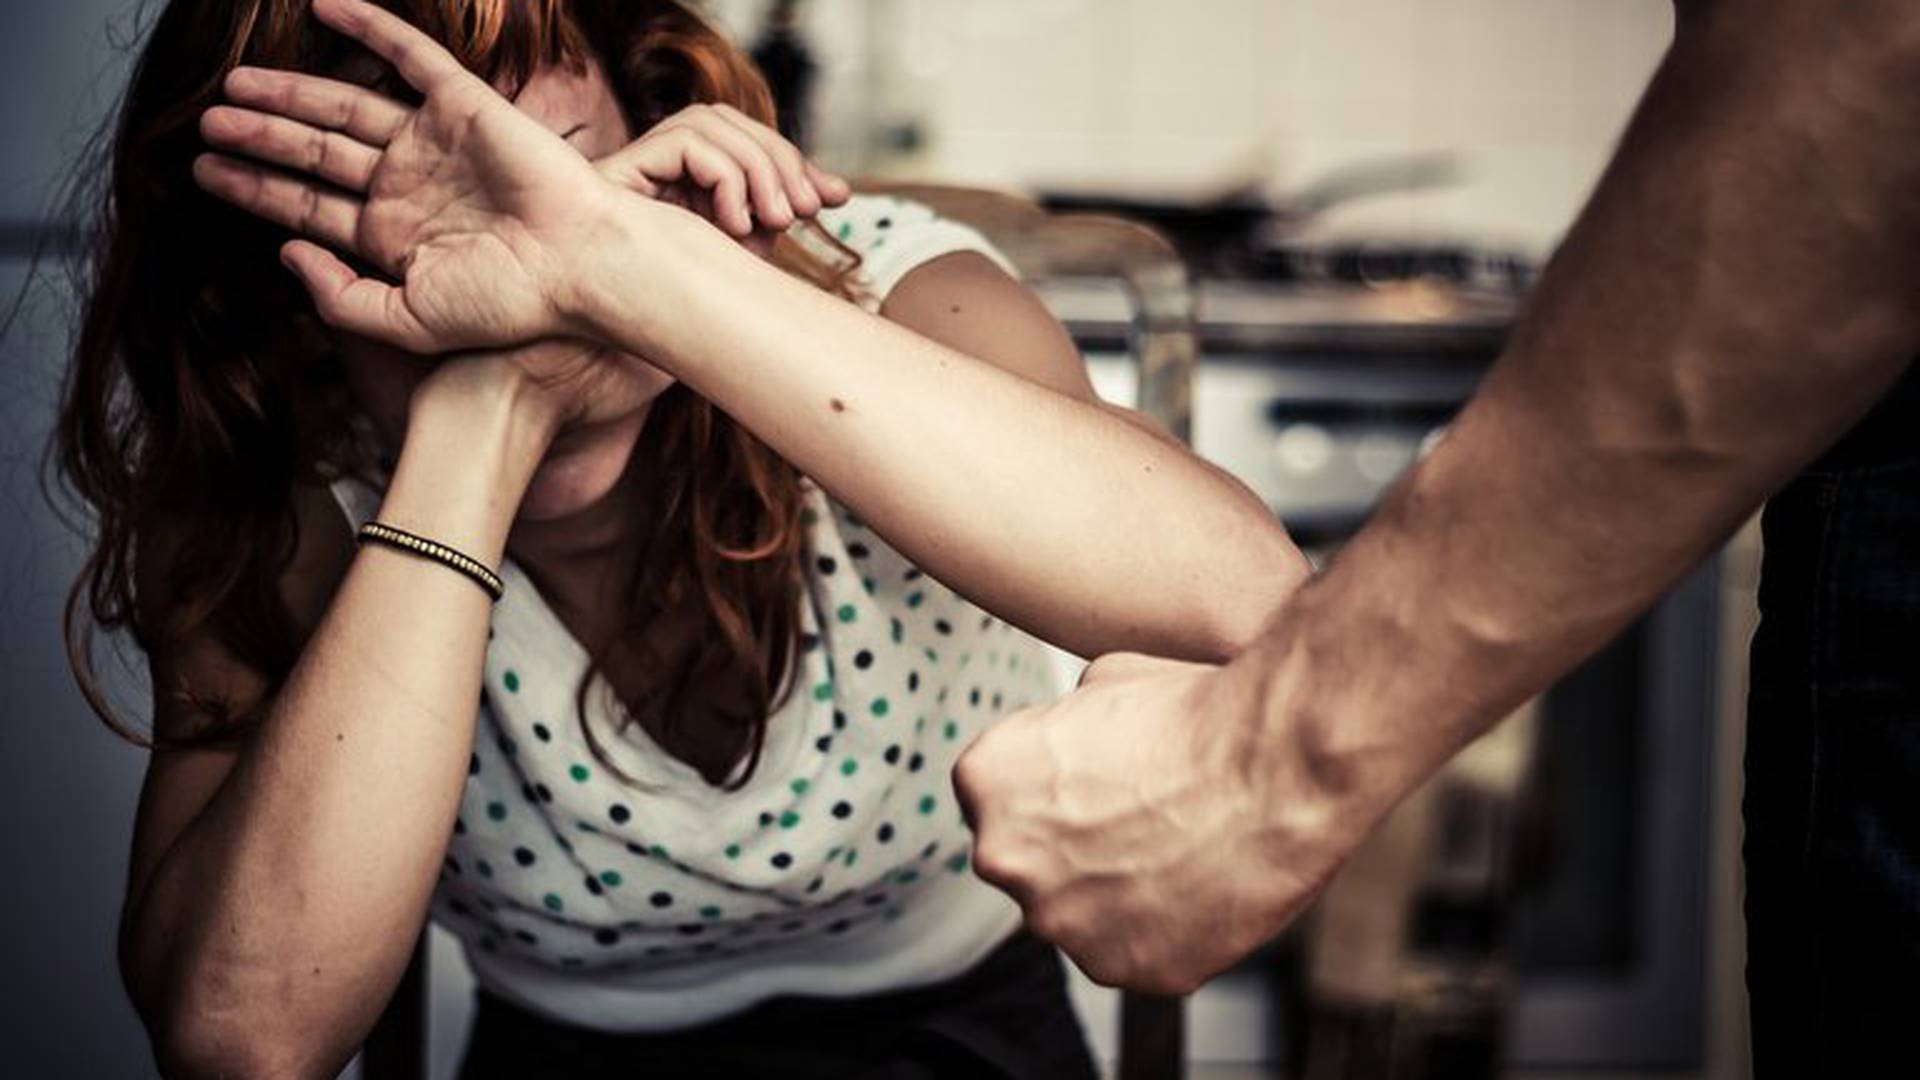 Violencia doméstica contra las mujeres: Reconoce los patrones, busca ayuda